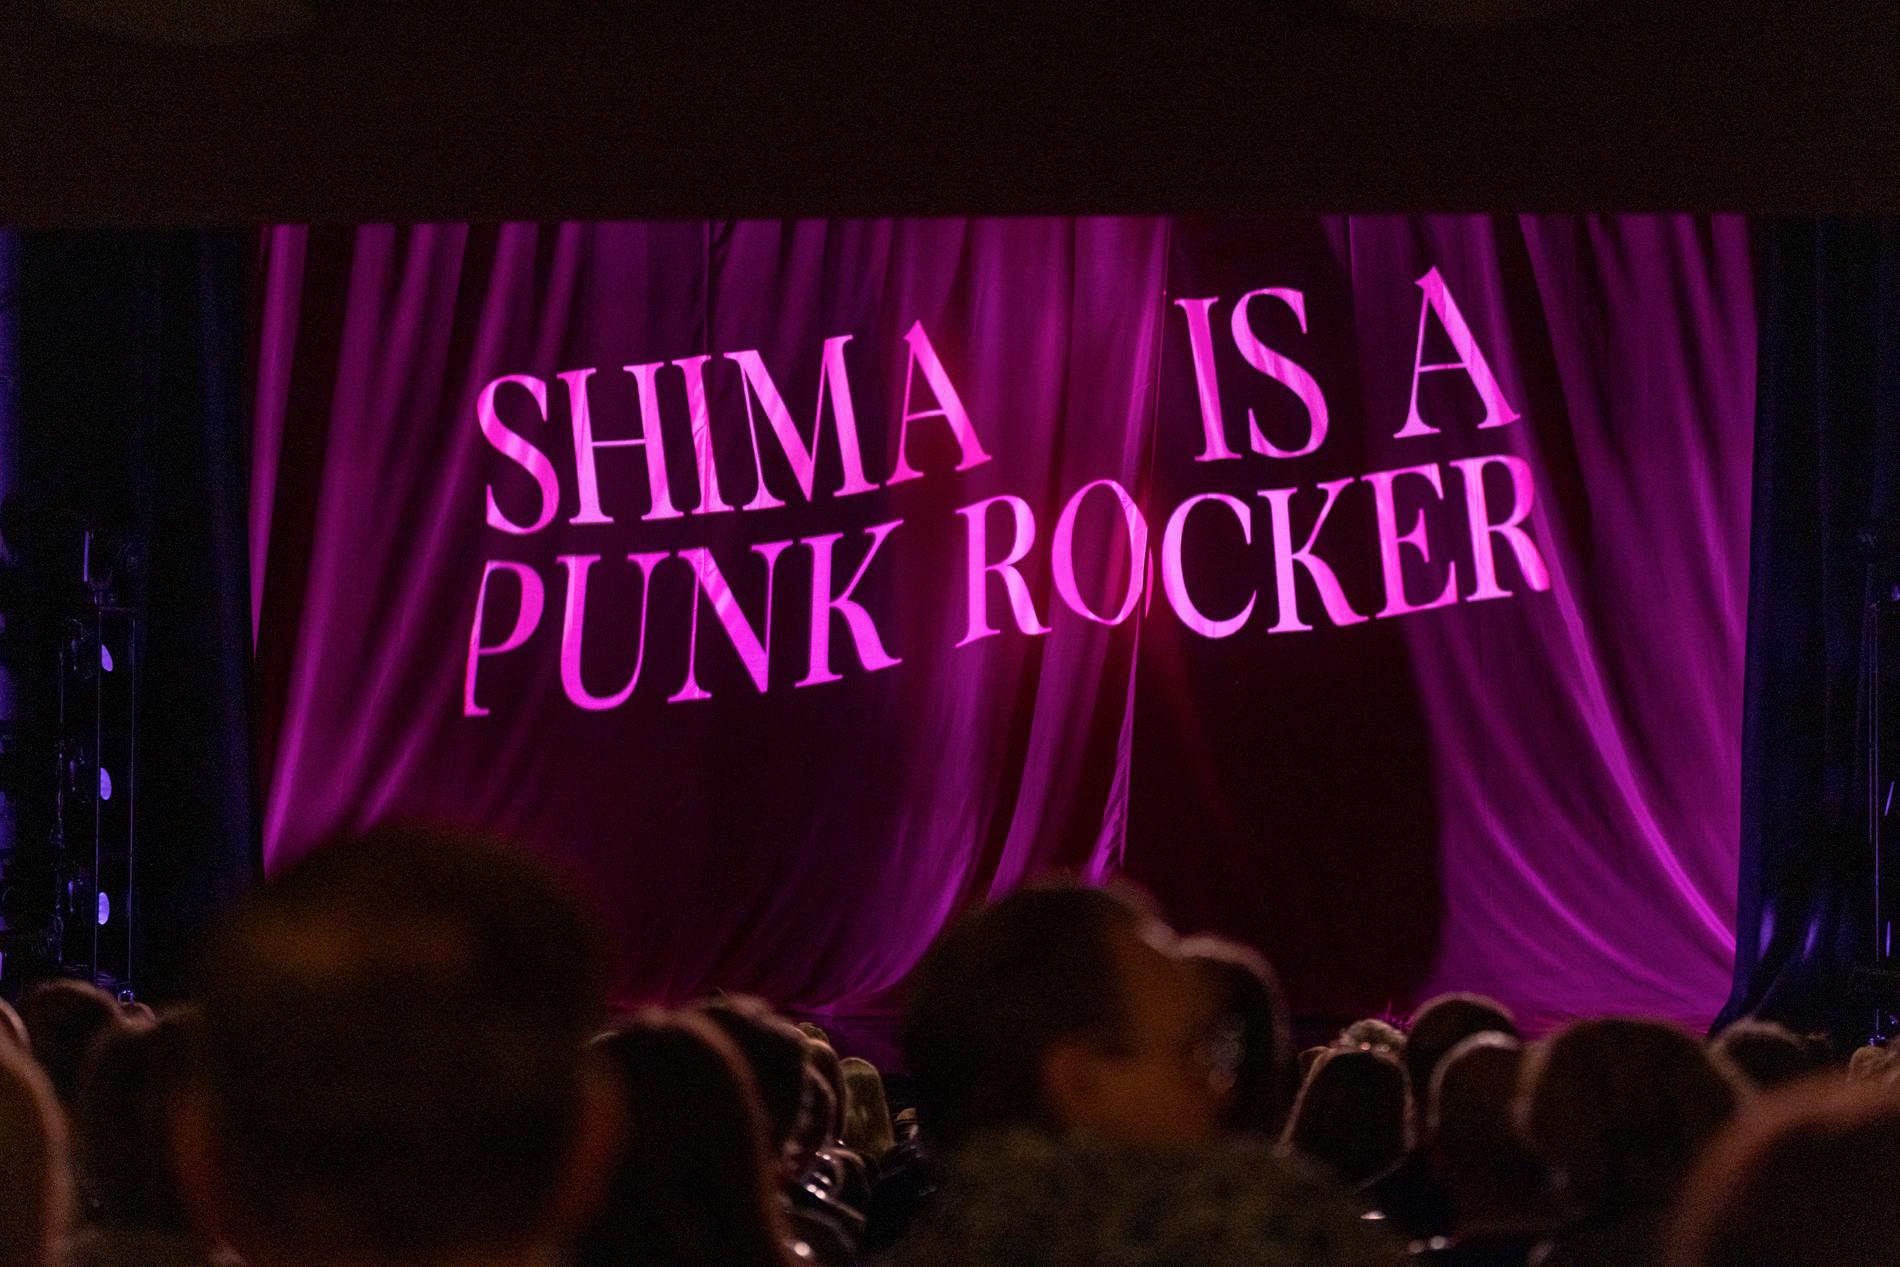 Shima is a punk rocker